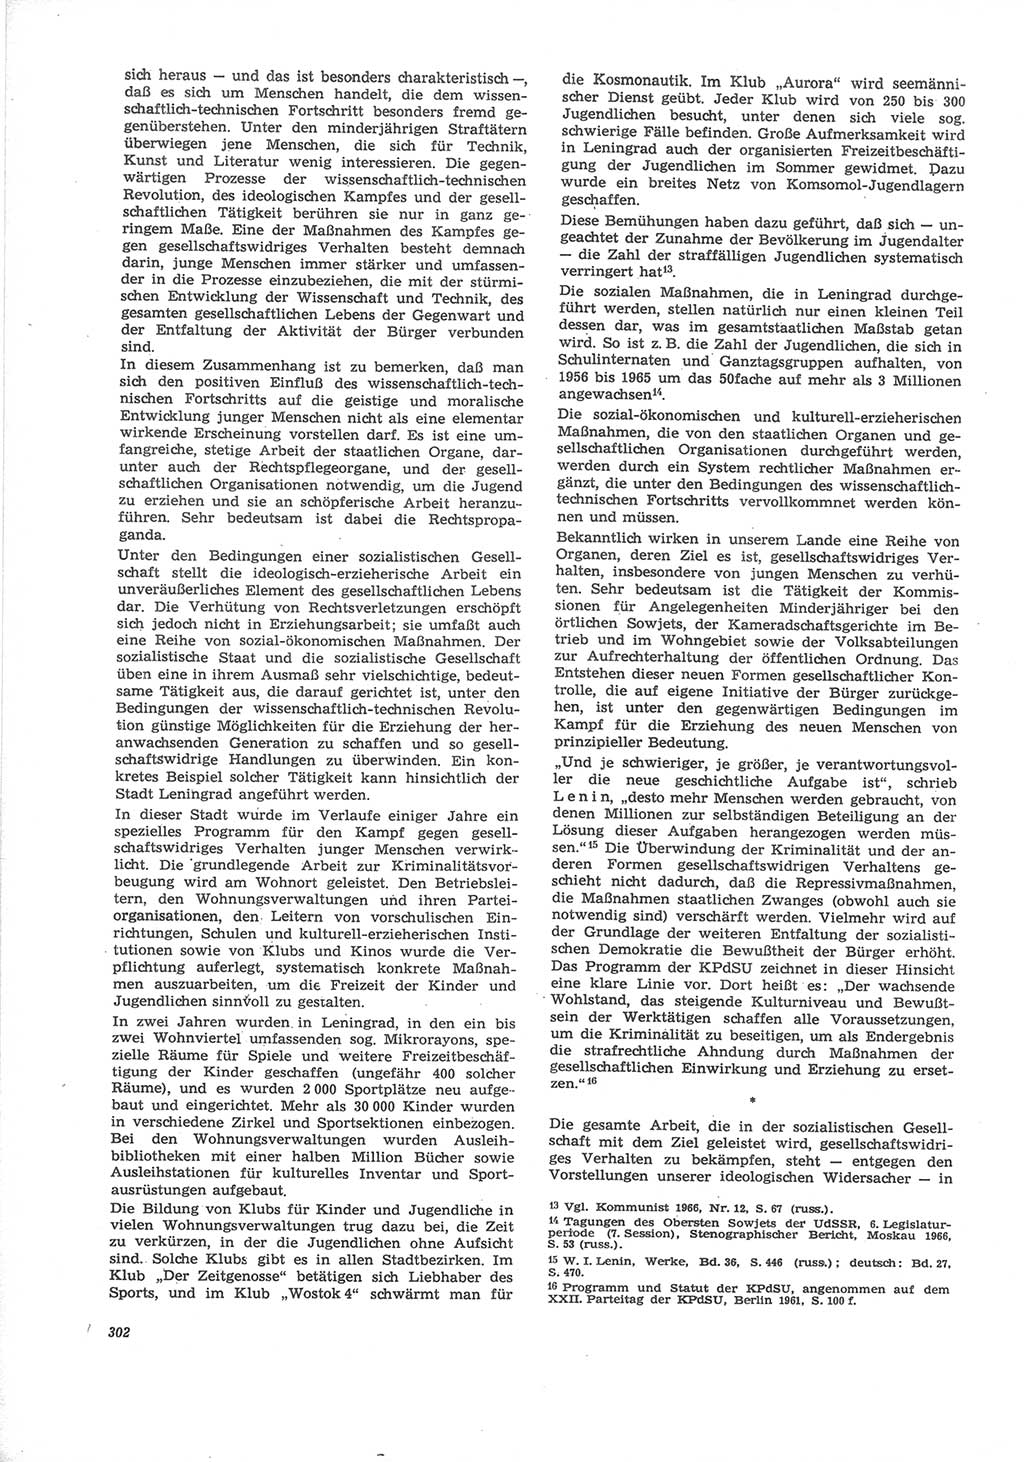 Neue Justiz (NJ), Zeitschrift für Recht und Rechtswissenschaft [Deutsche Demokratische Republik (DDR)], 24. Jahrgang 1970, Seite 302 (NJ DDR 1970, S. 302)